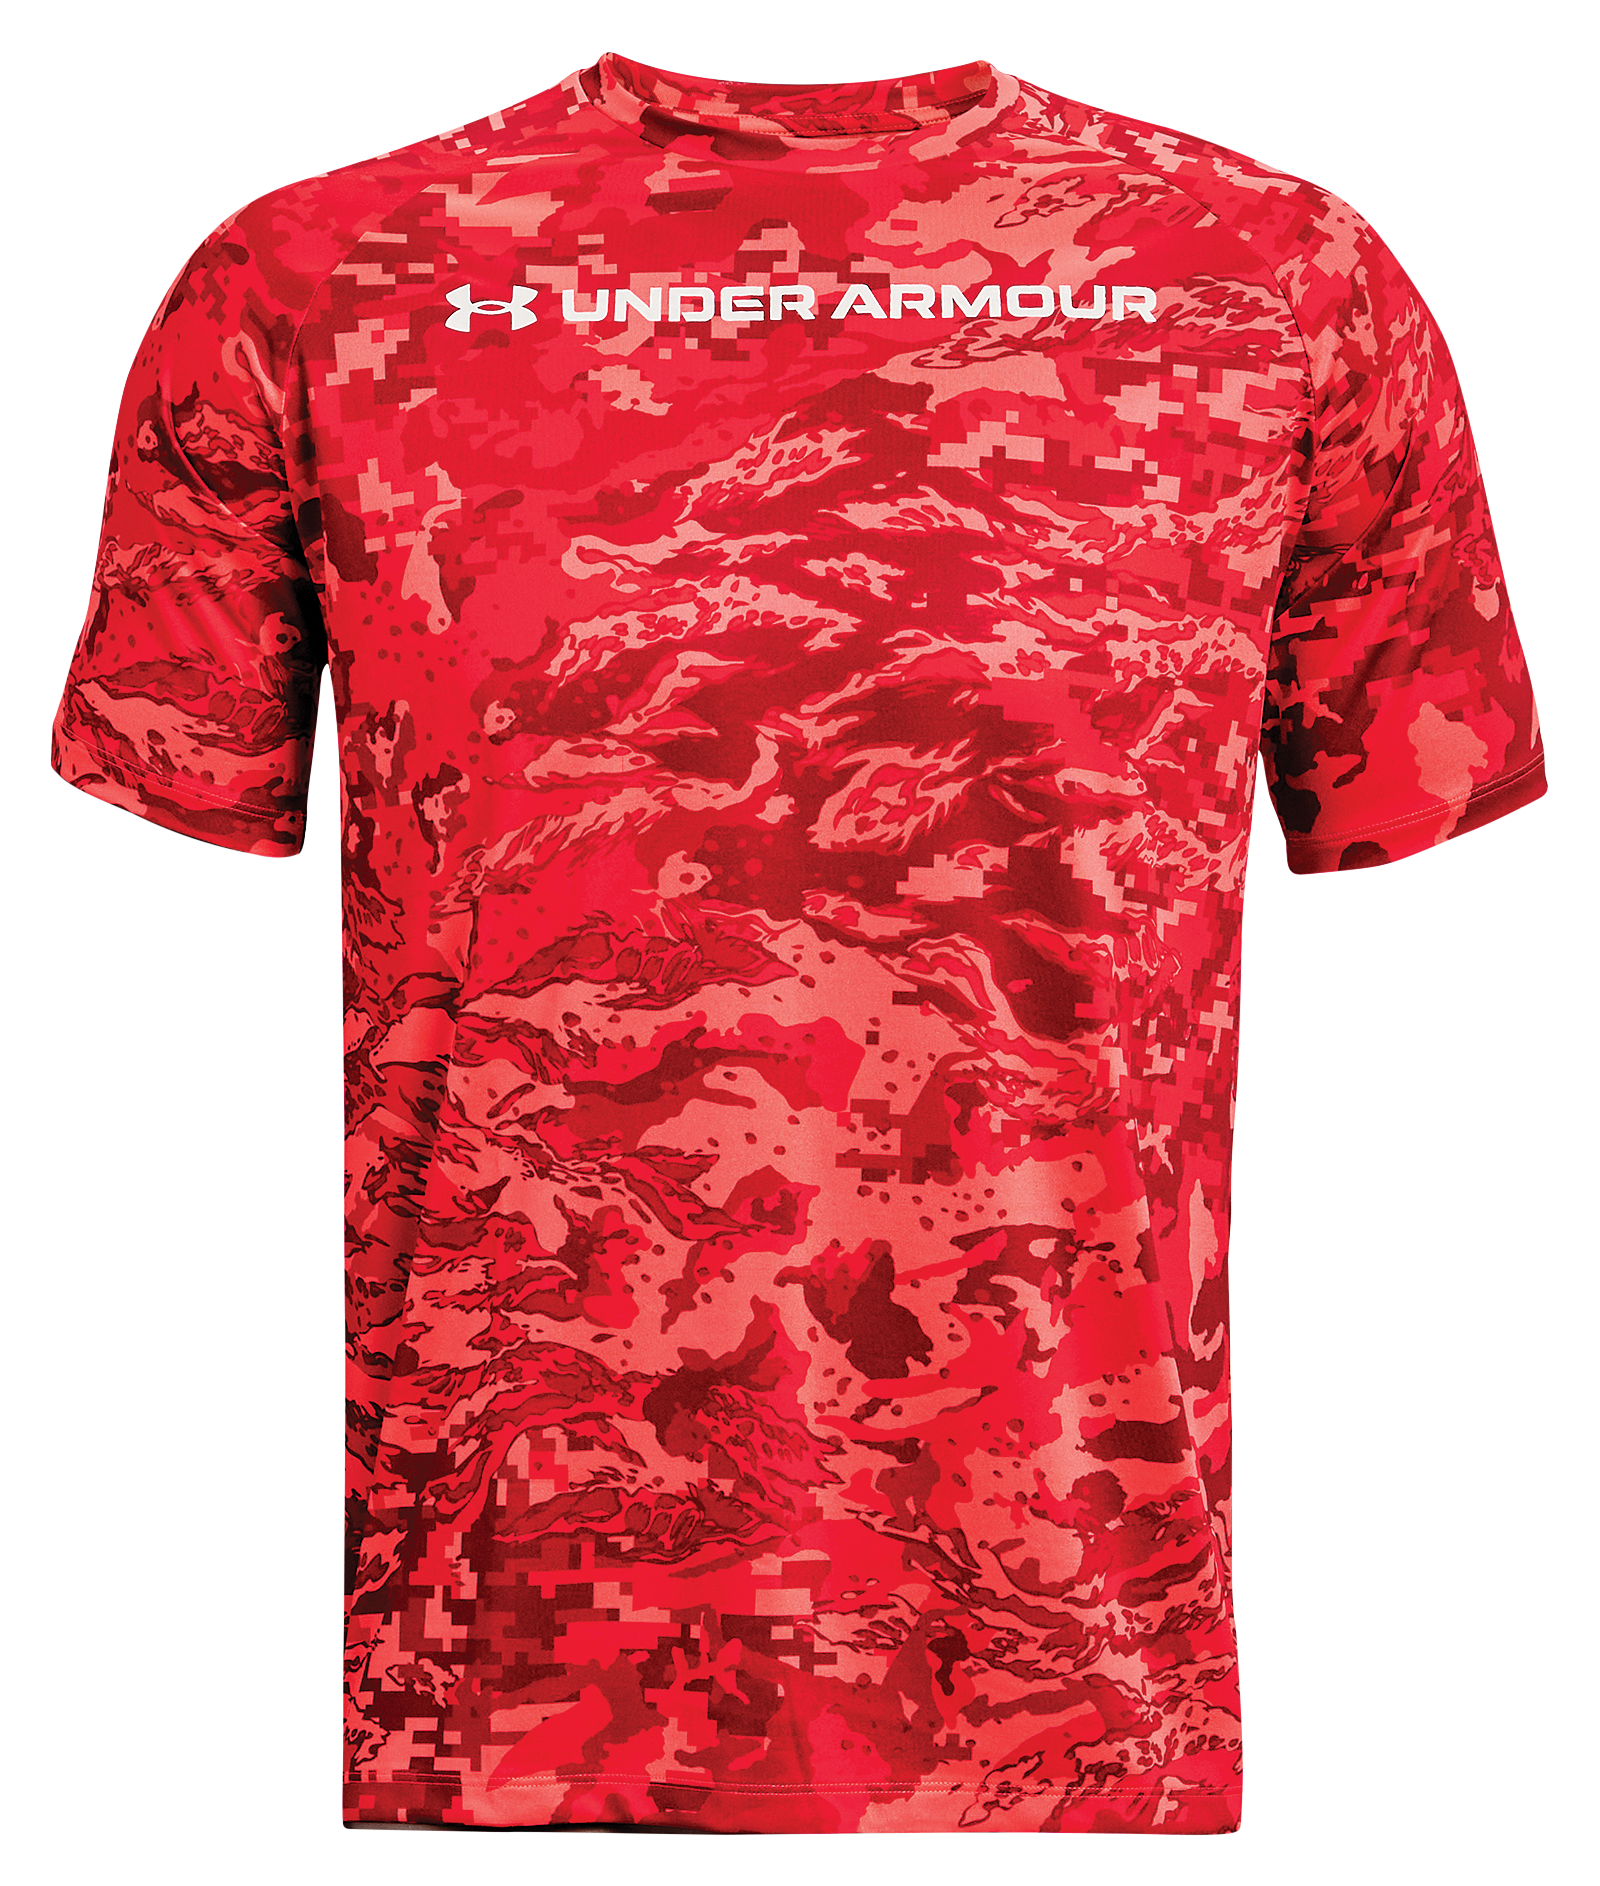 Under Armour UA Tech ABC Camo Short-Sleeve T-Shirt for Men - Venom Red/White - S